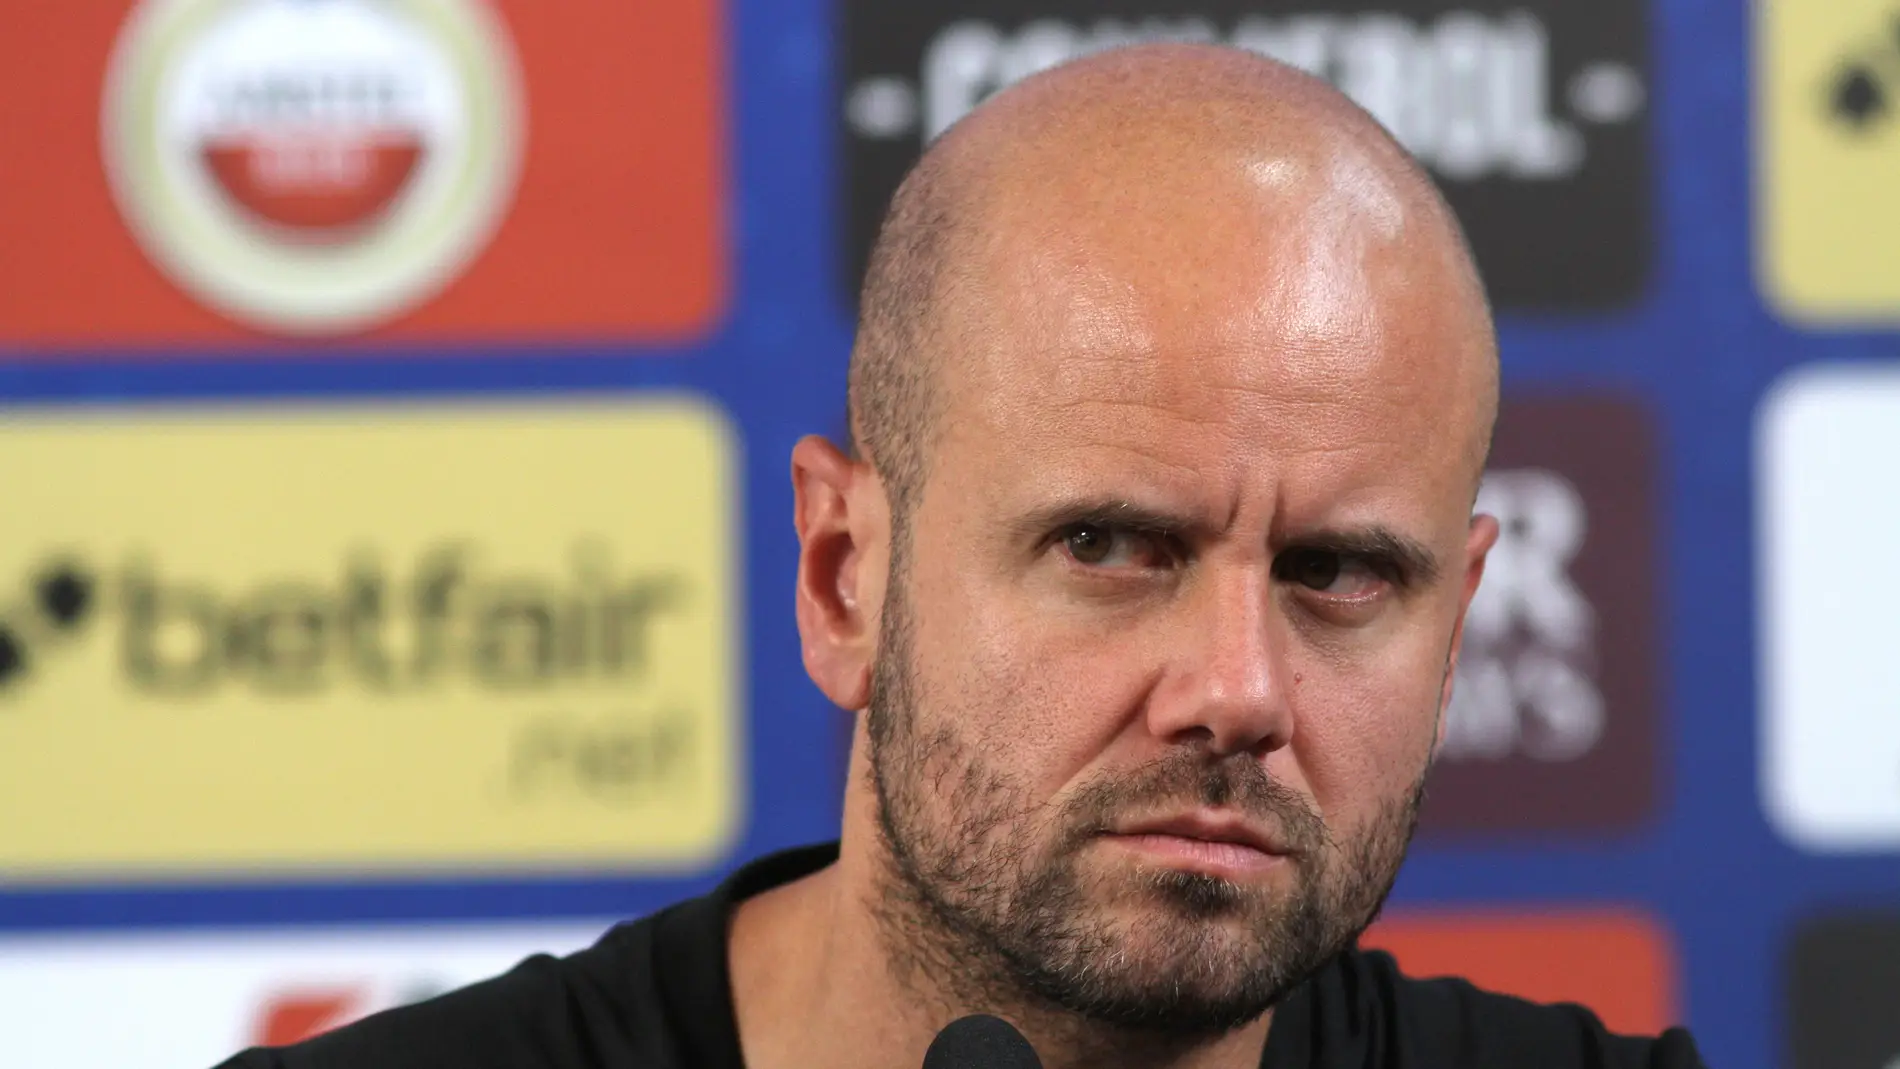 El entrenador del Sporting pide disculpas por haber comparado el gol con "las chicas en la discoteca"